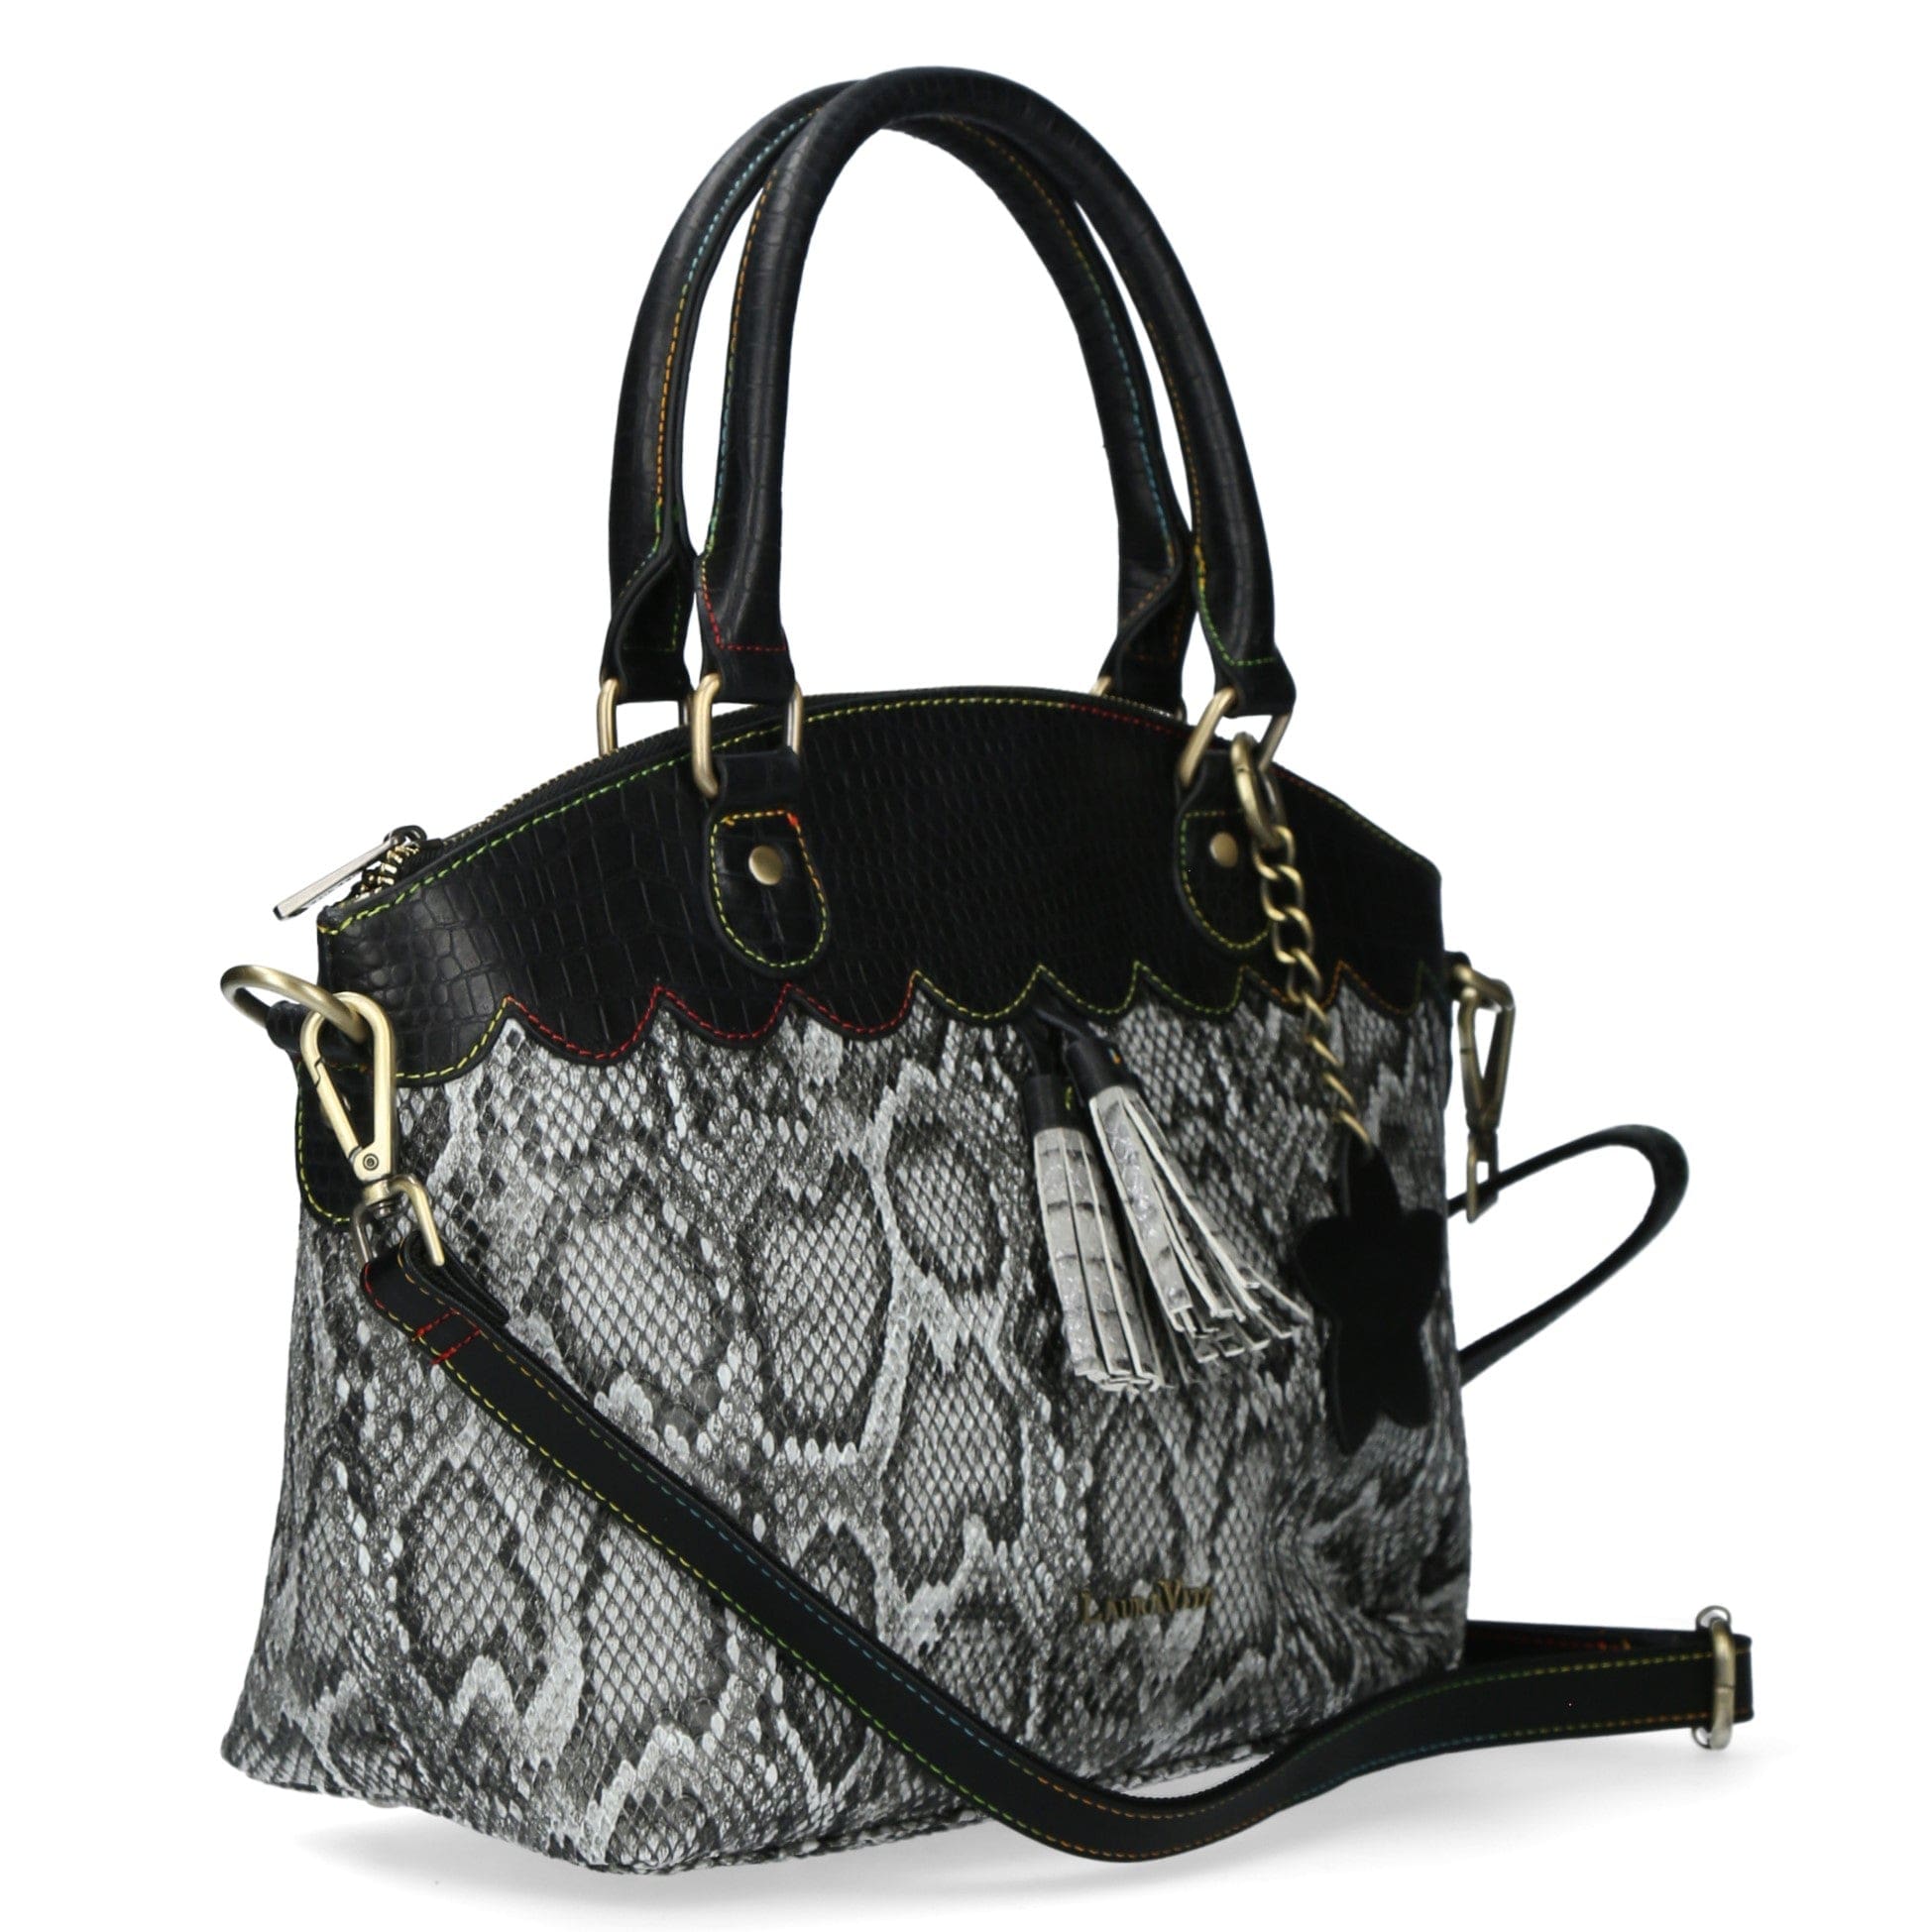 Taschen Handtasche Leder 4736C - Grau - Taschen